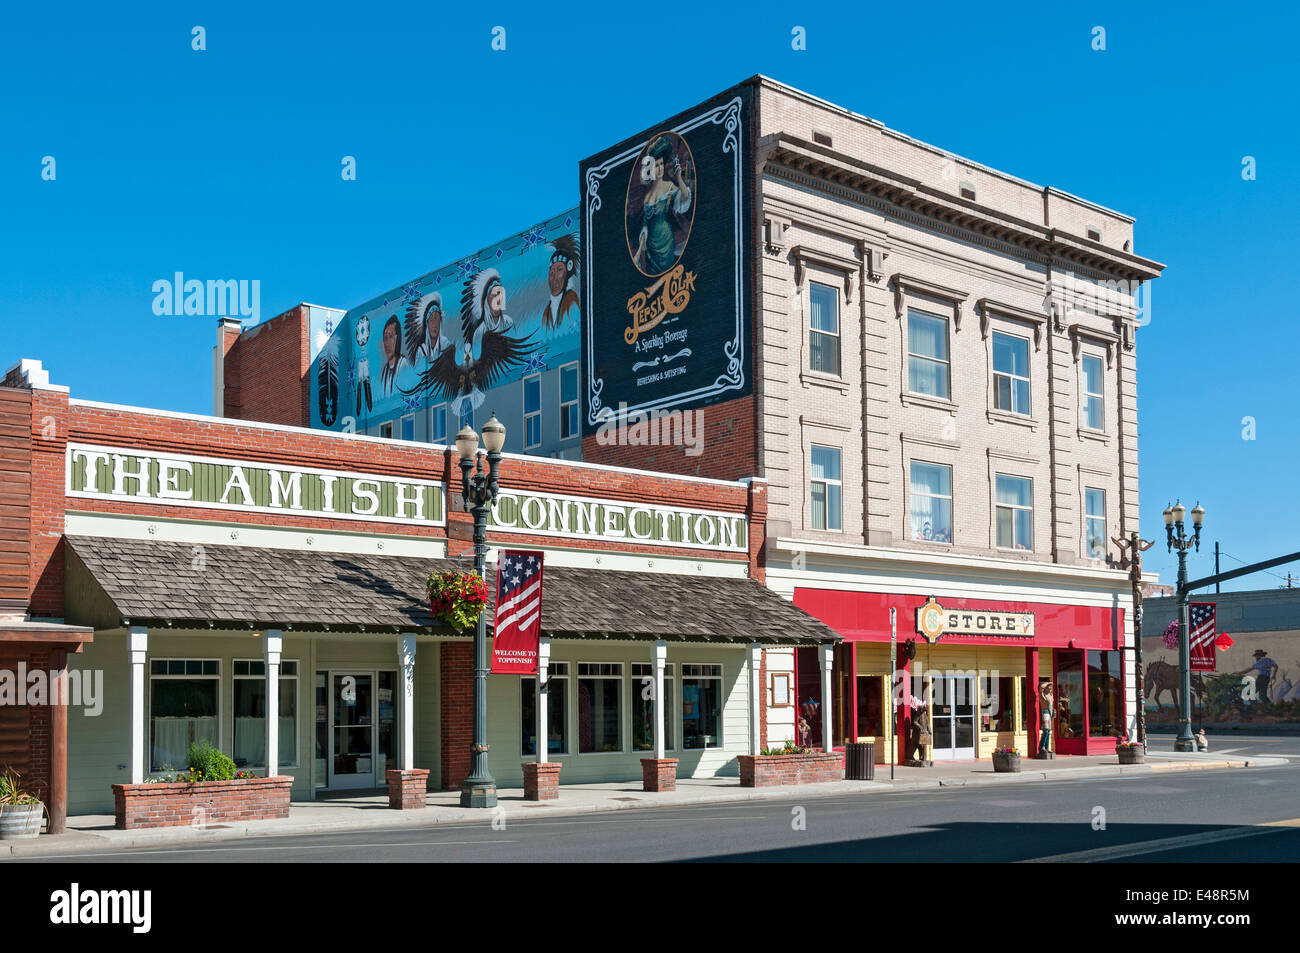 Washington, Toppenish, murales, tiendas del centro de la ciudad Foto de stock